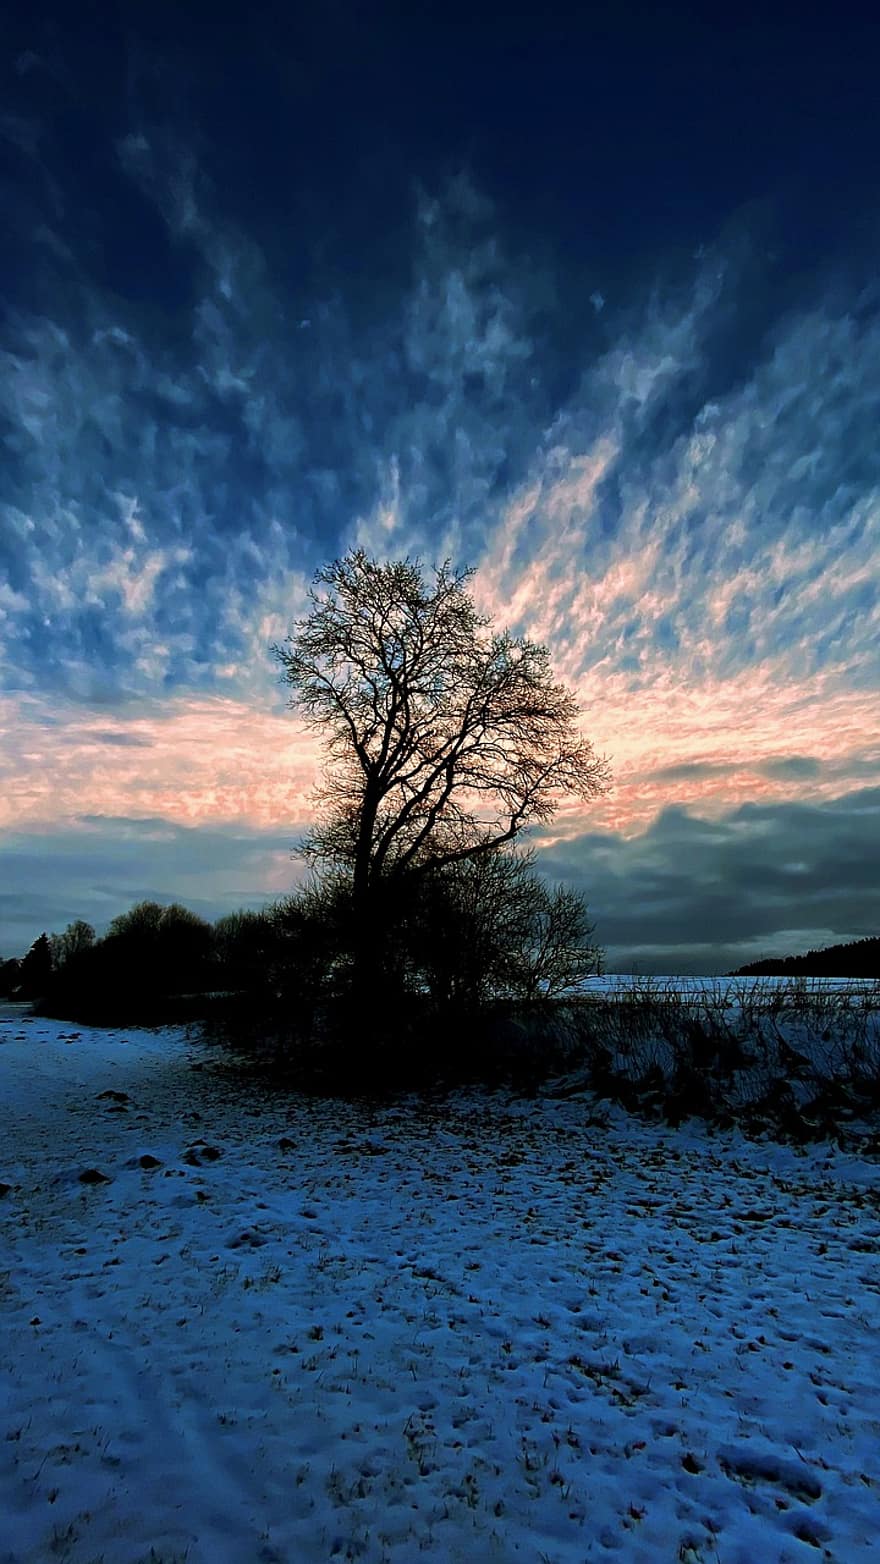 पेड़, सर्दियों का परिदृश्य, सर्दी, हिमपात, मनोदशा, शाम का माहौल, स्वर्ग, बादलों, प्रकृति, रोशनी, नीला